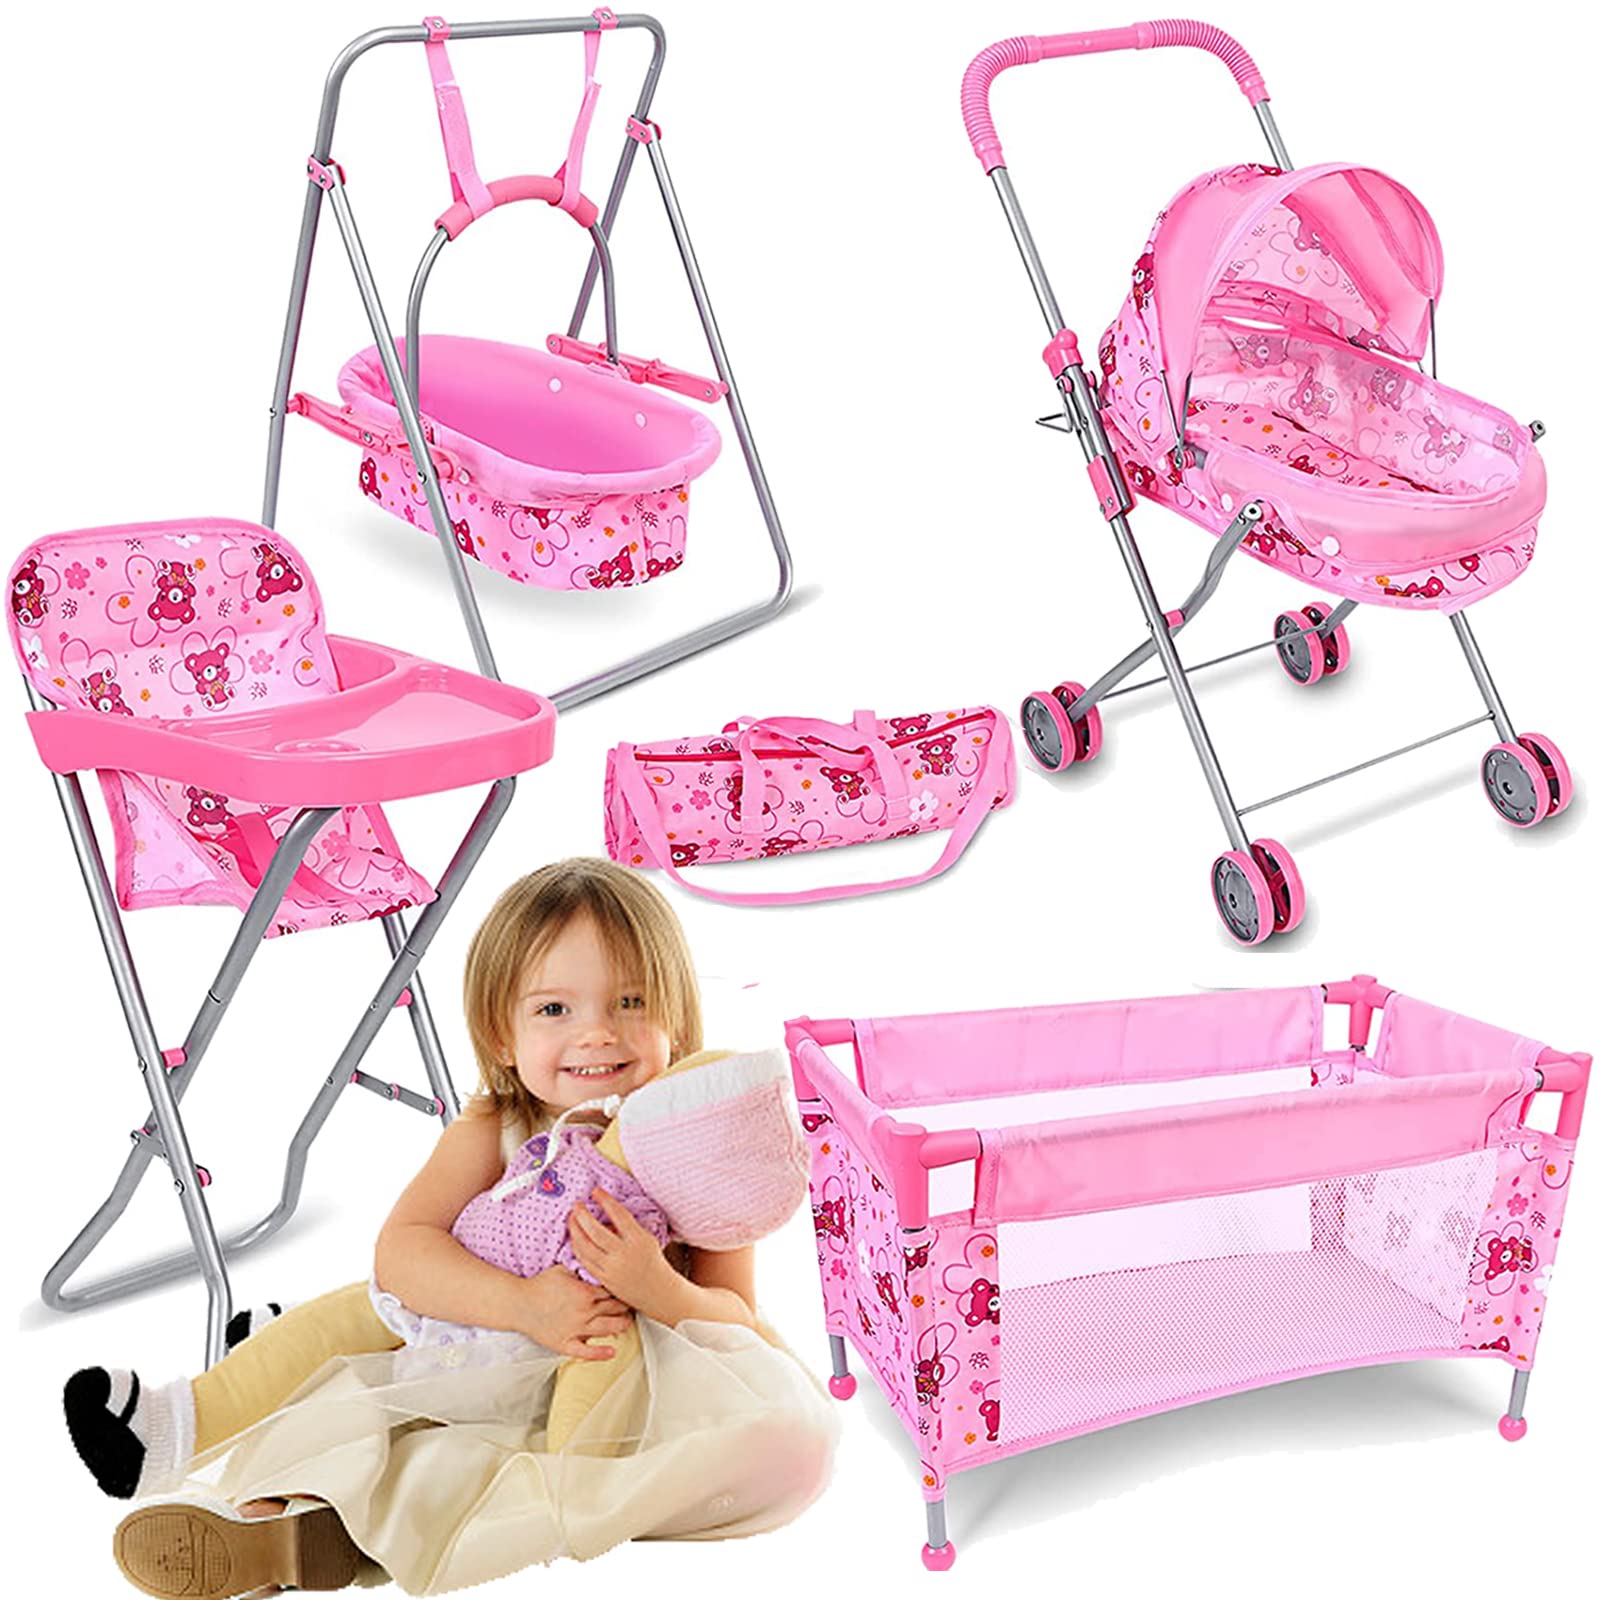 Stroller For Dolls Baby Doll Stroller Set Fits 16